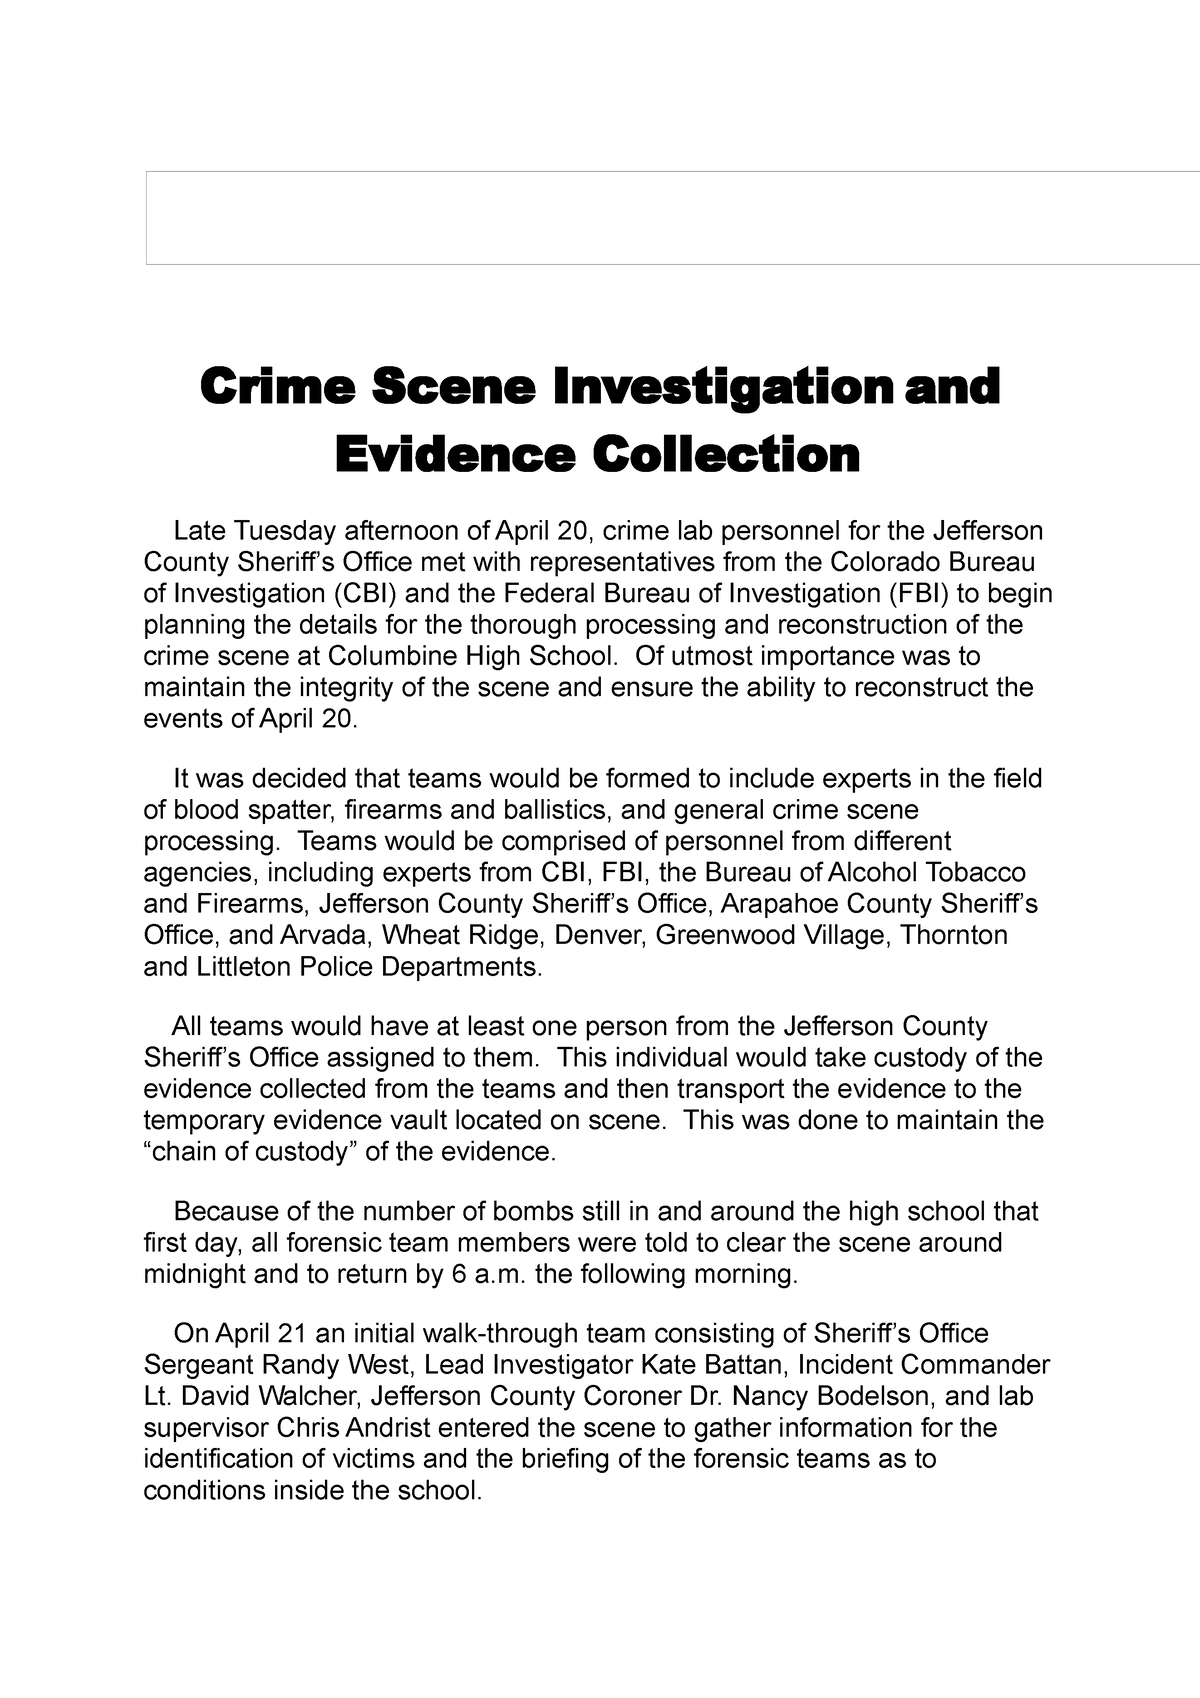 research paper on crime scene